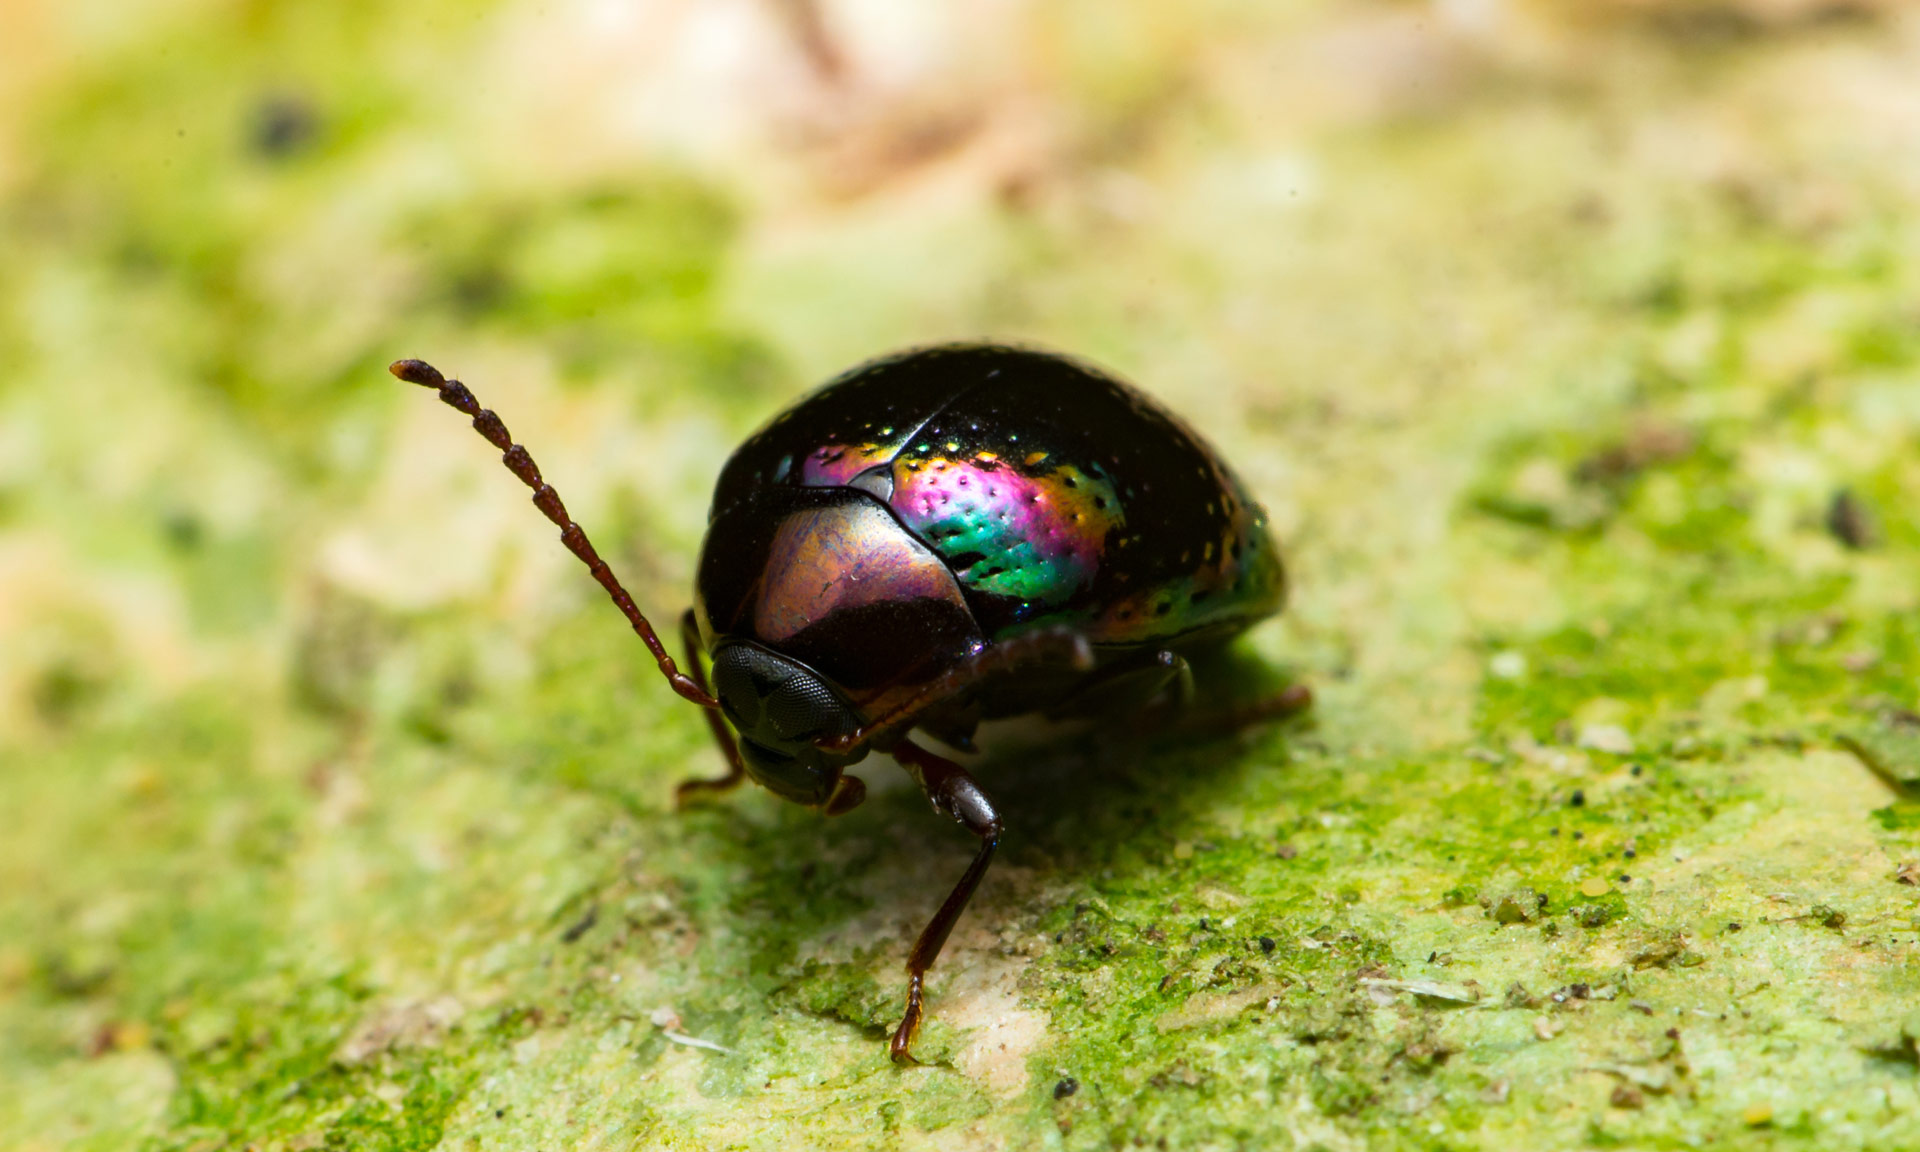 The beatiful rainbow leaf beetle